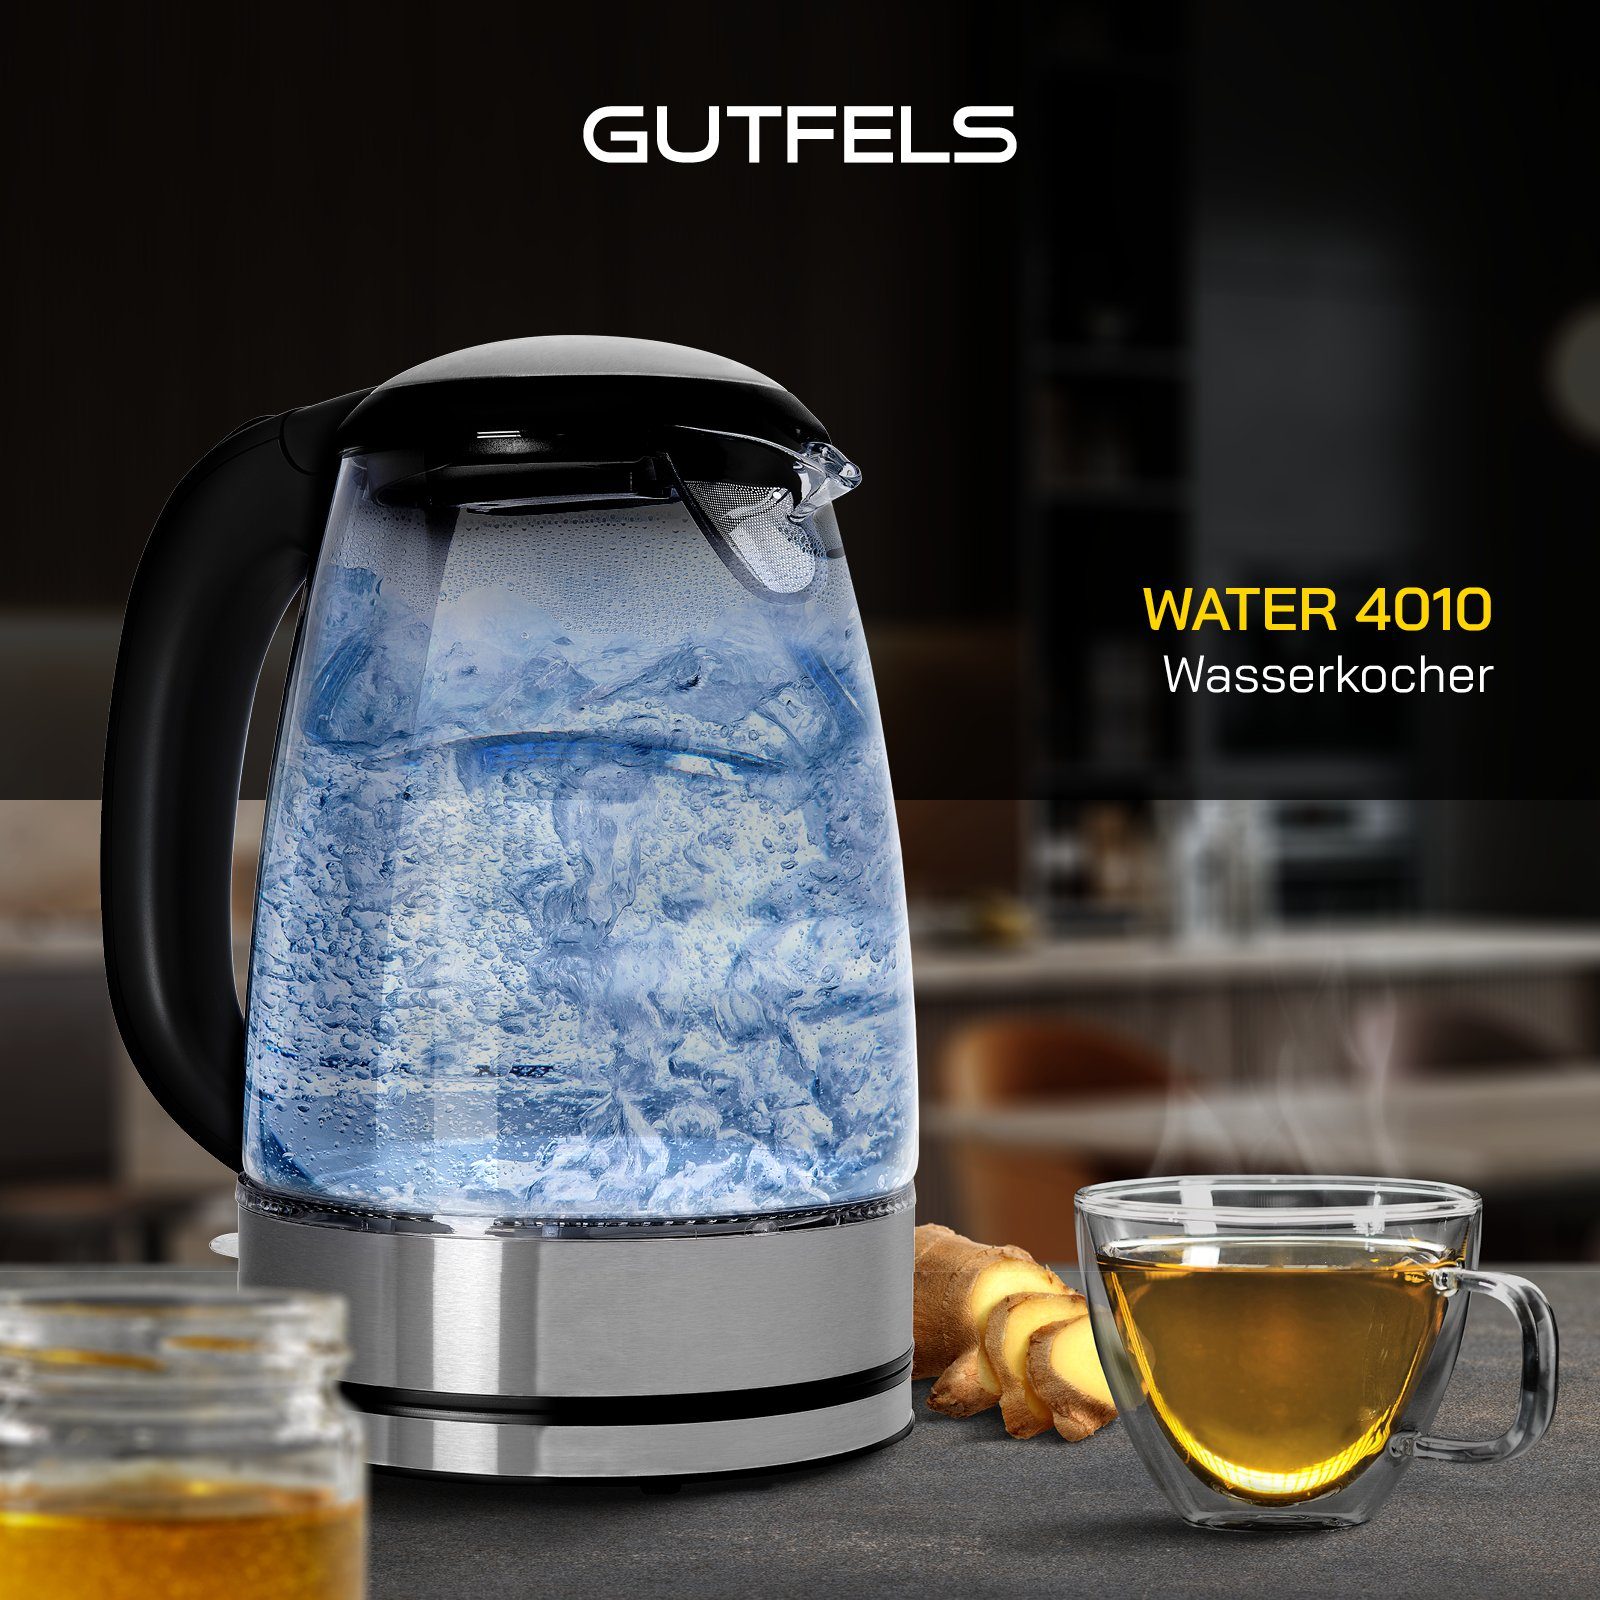 Gutfels Wasserkocher Ambientebeleuchtung 4010, 2200 blauer mit WATER W, l, 1.7 XL-Kocher